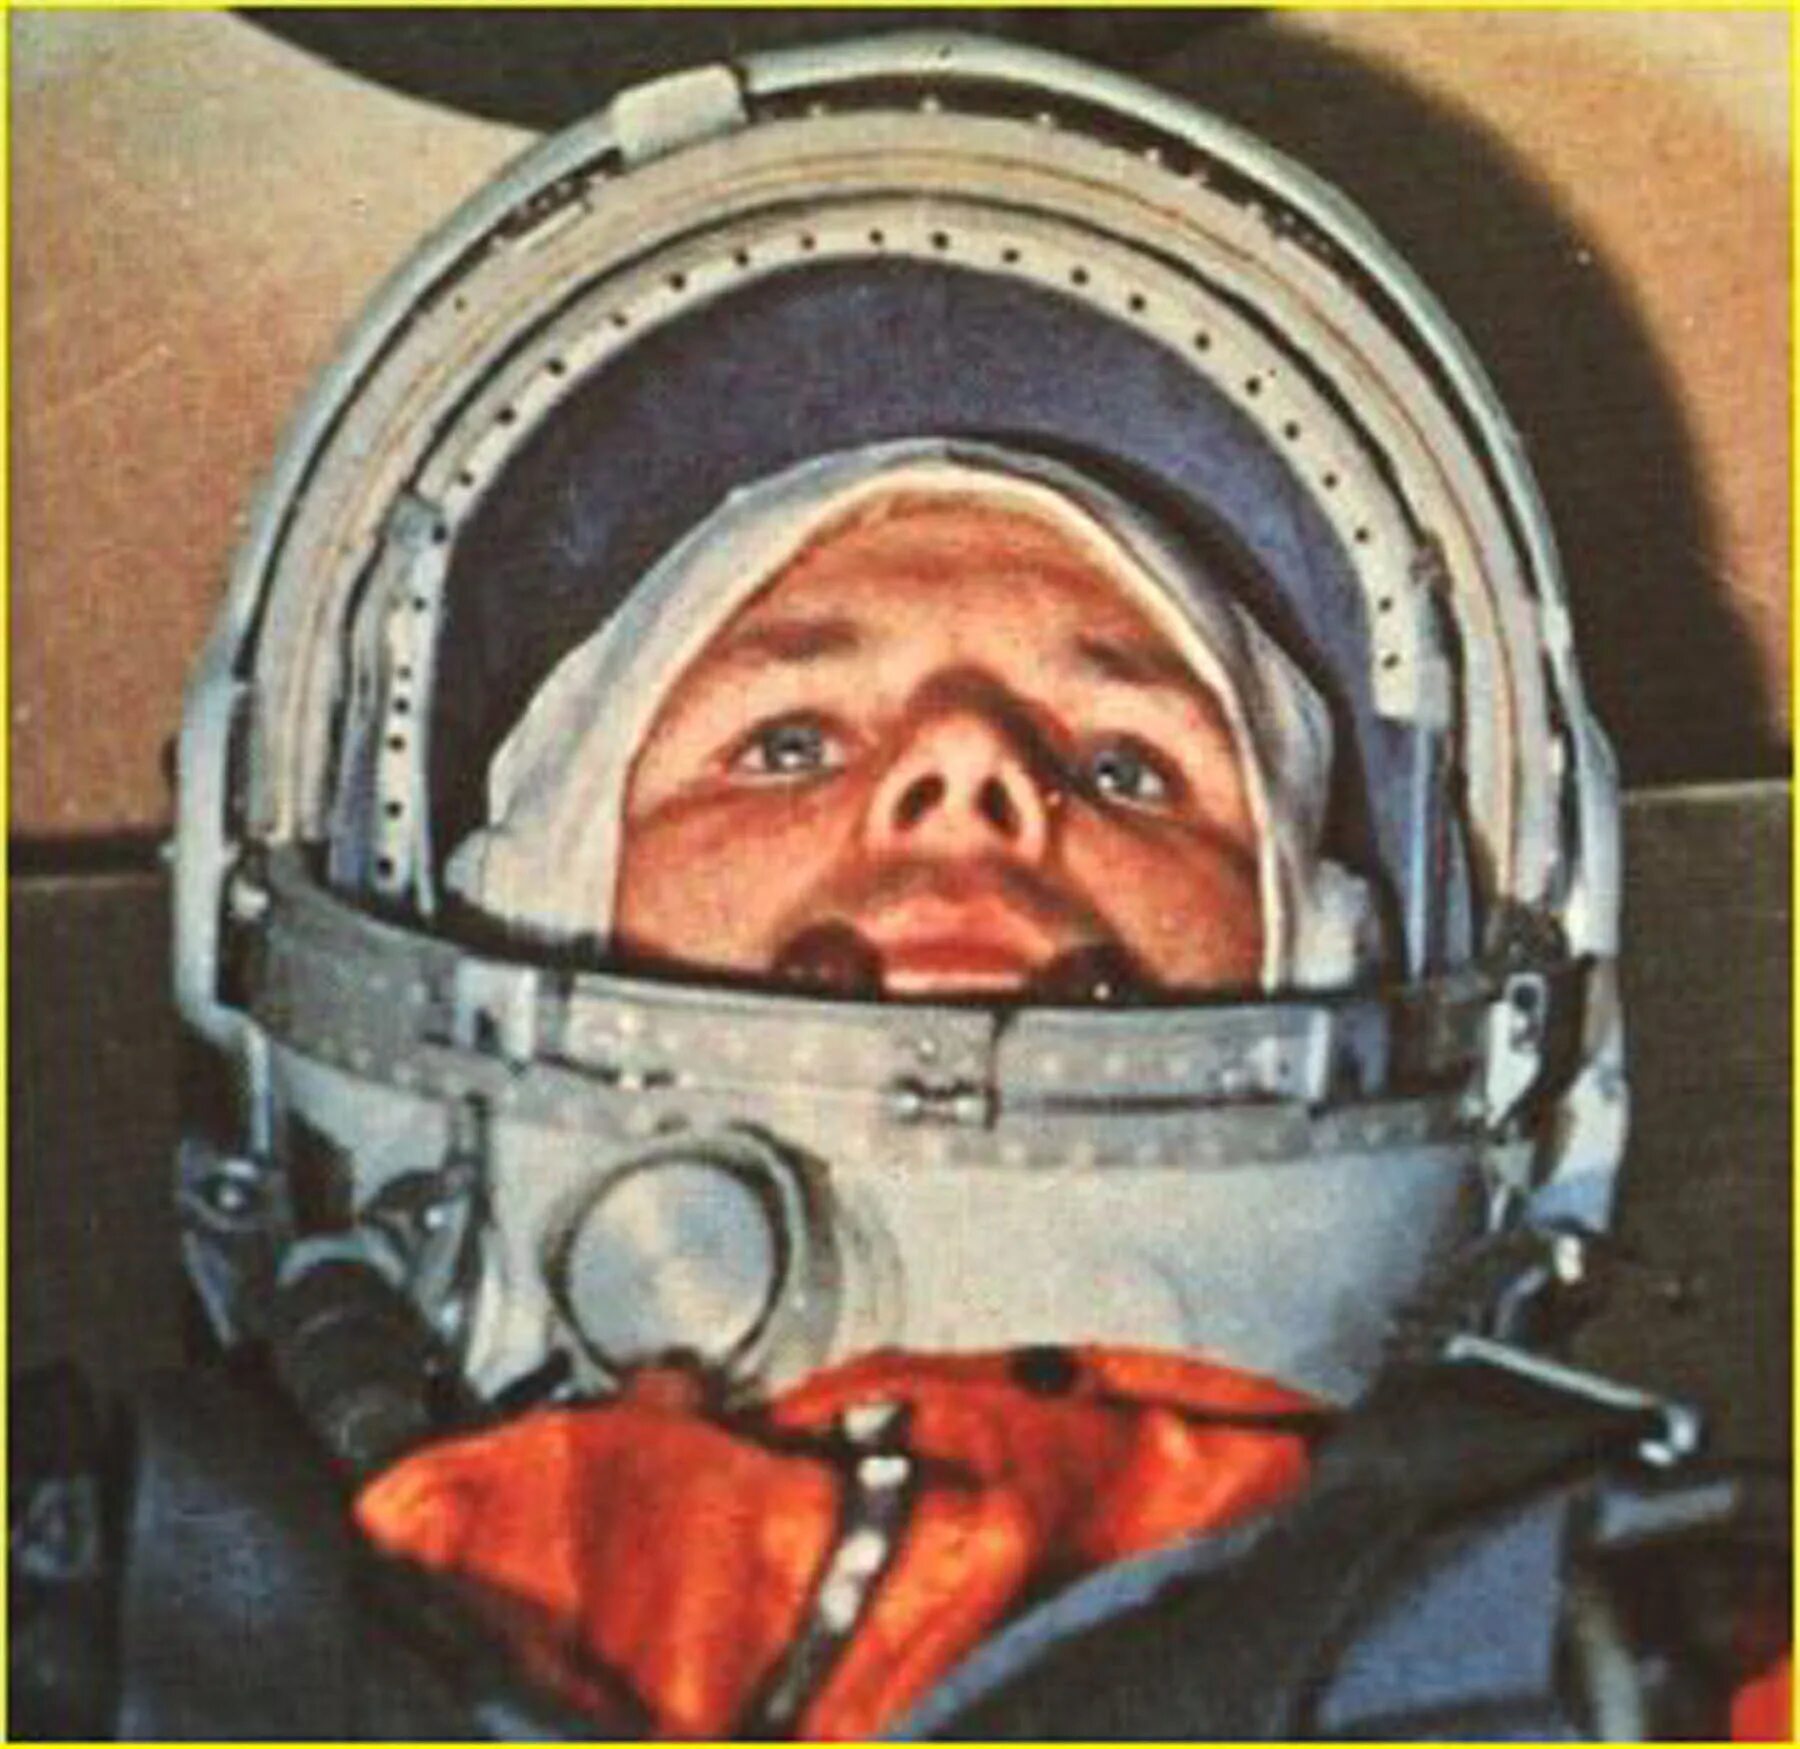 1961 год космонавтика. Гагарин в кабине Восток 1.